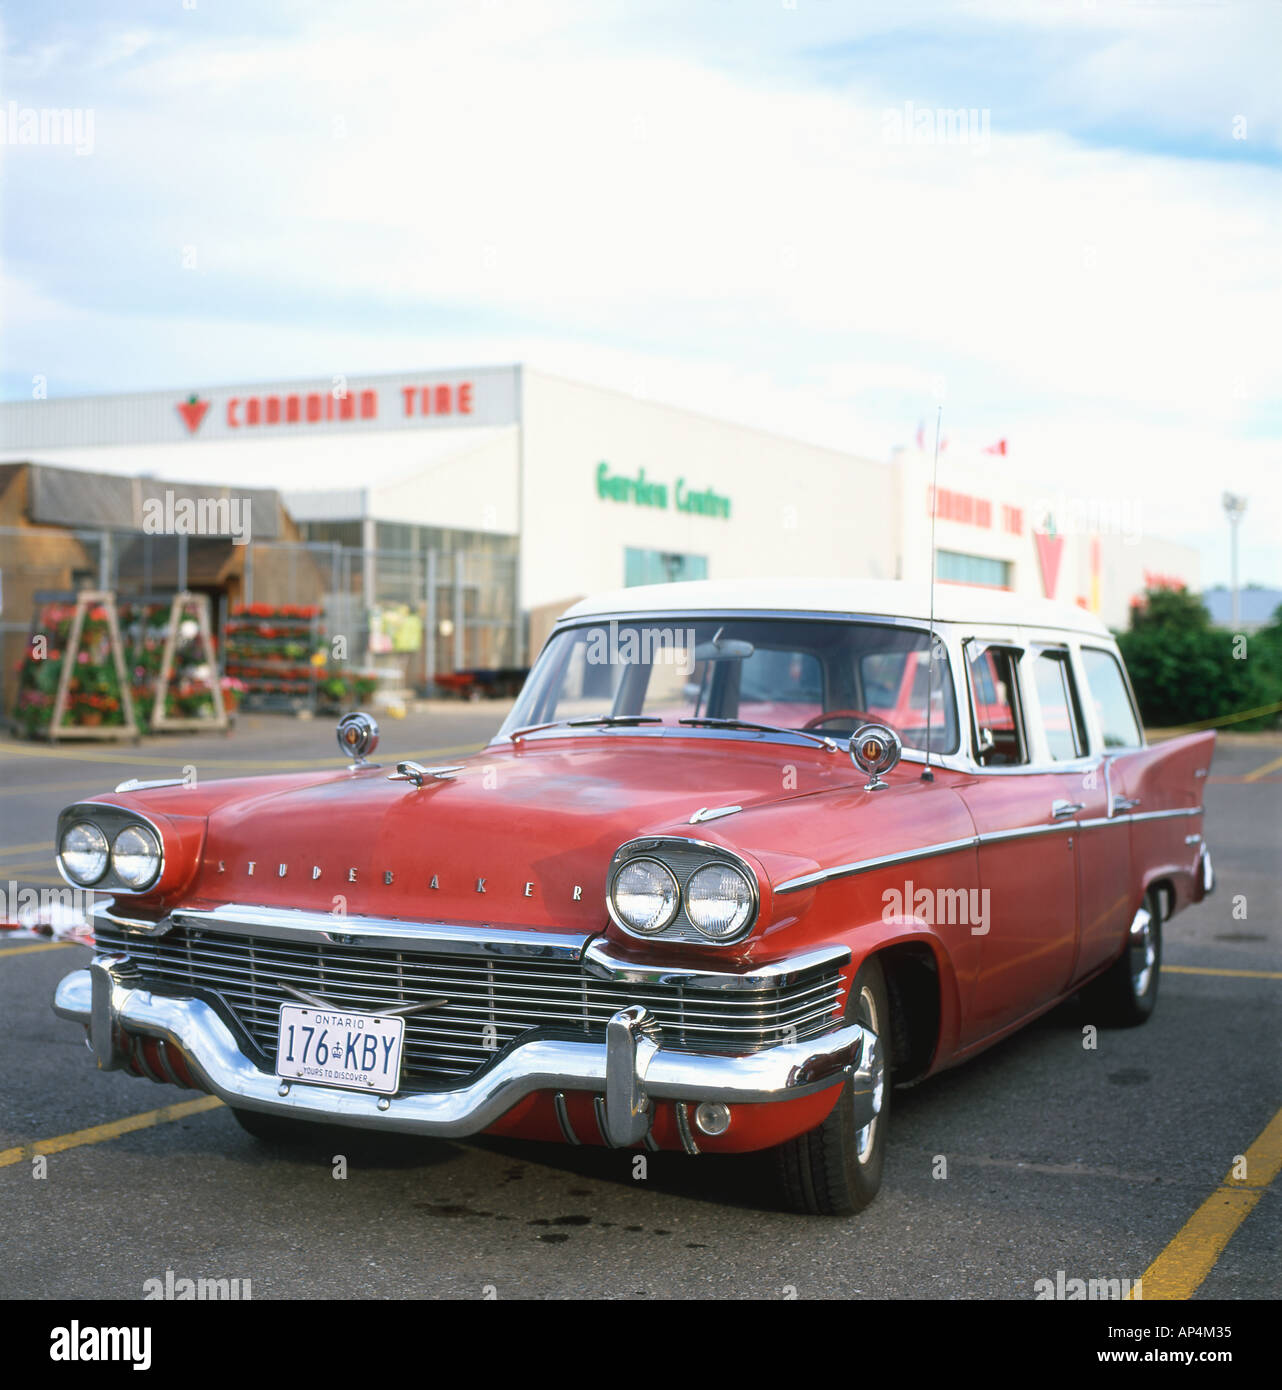 Vorderansicht eines 1950er Studebaker klassische amerikanische Station Wagon Auto auf einem Parkplatz in Kanada KATHY DEWITT geparkt Stockfoto